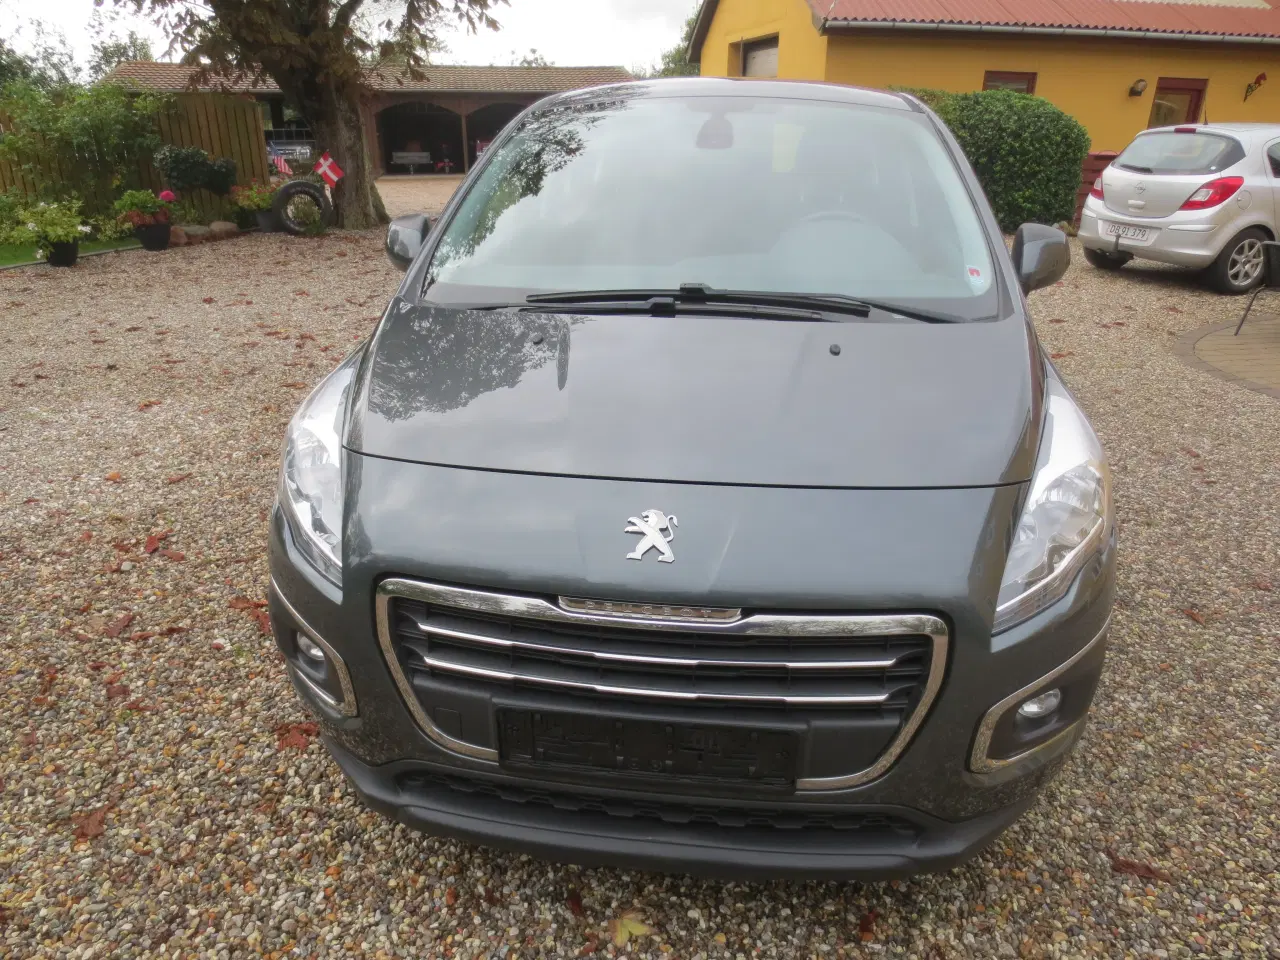 Billede 1 - Peugeot 3008 1.6 HDi År 2014. Nysynet. 